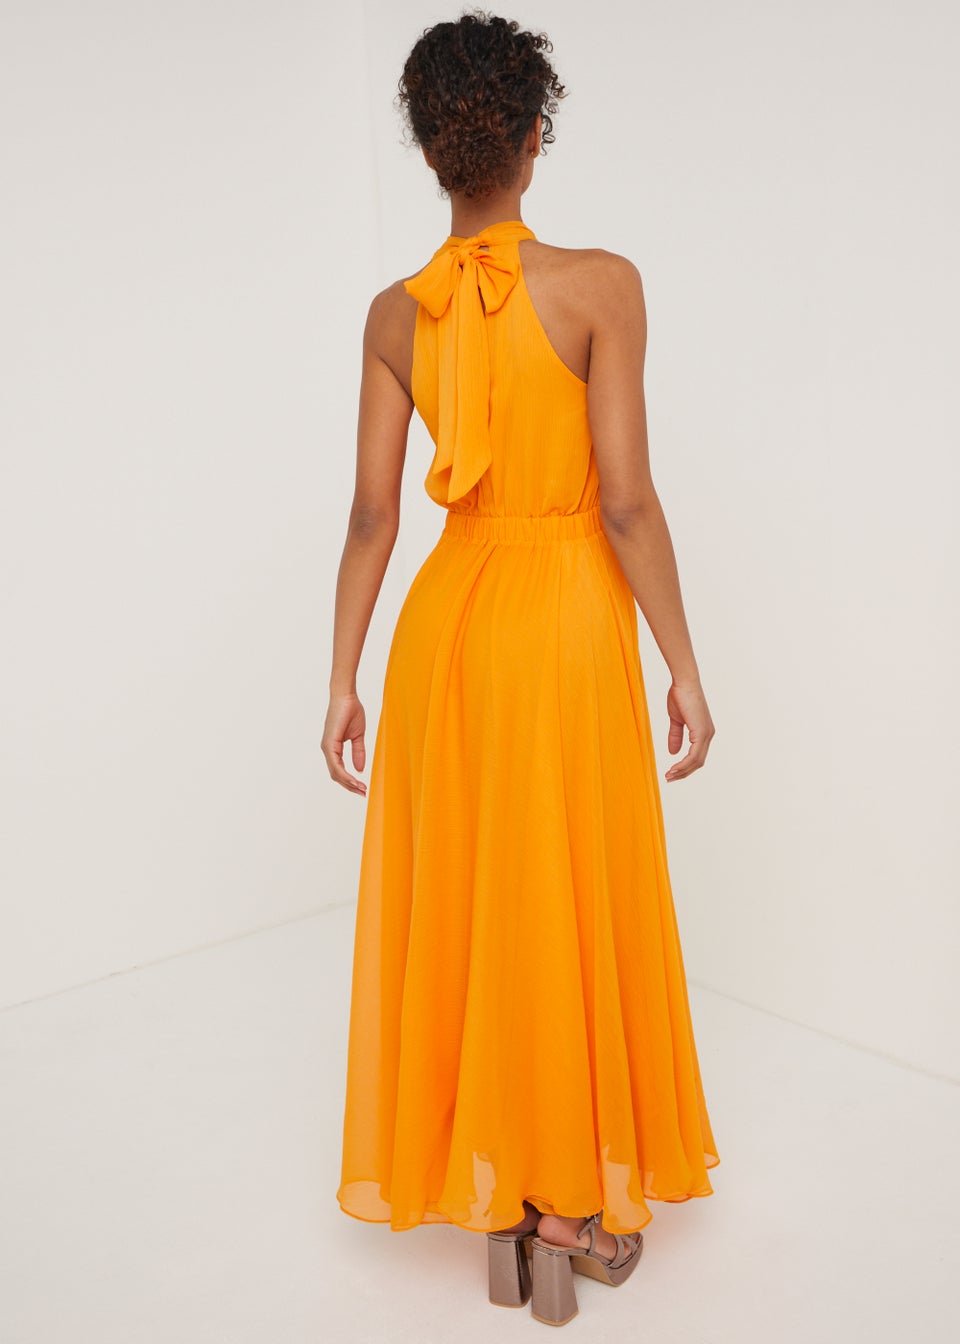 Et Vous Orange Cross Front Maxi Dress - Matalan